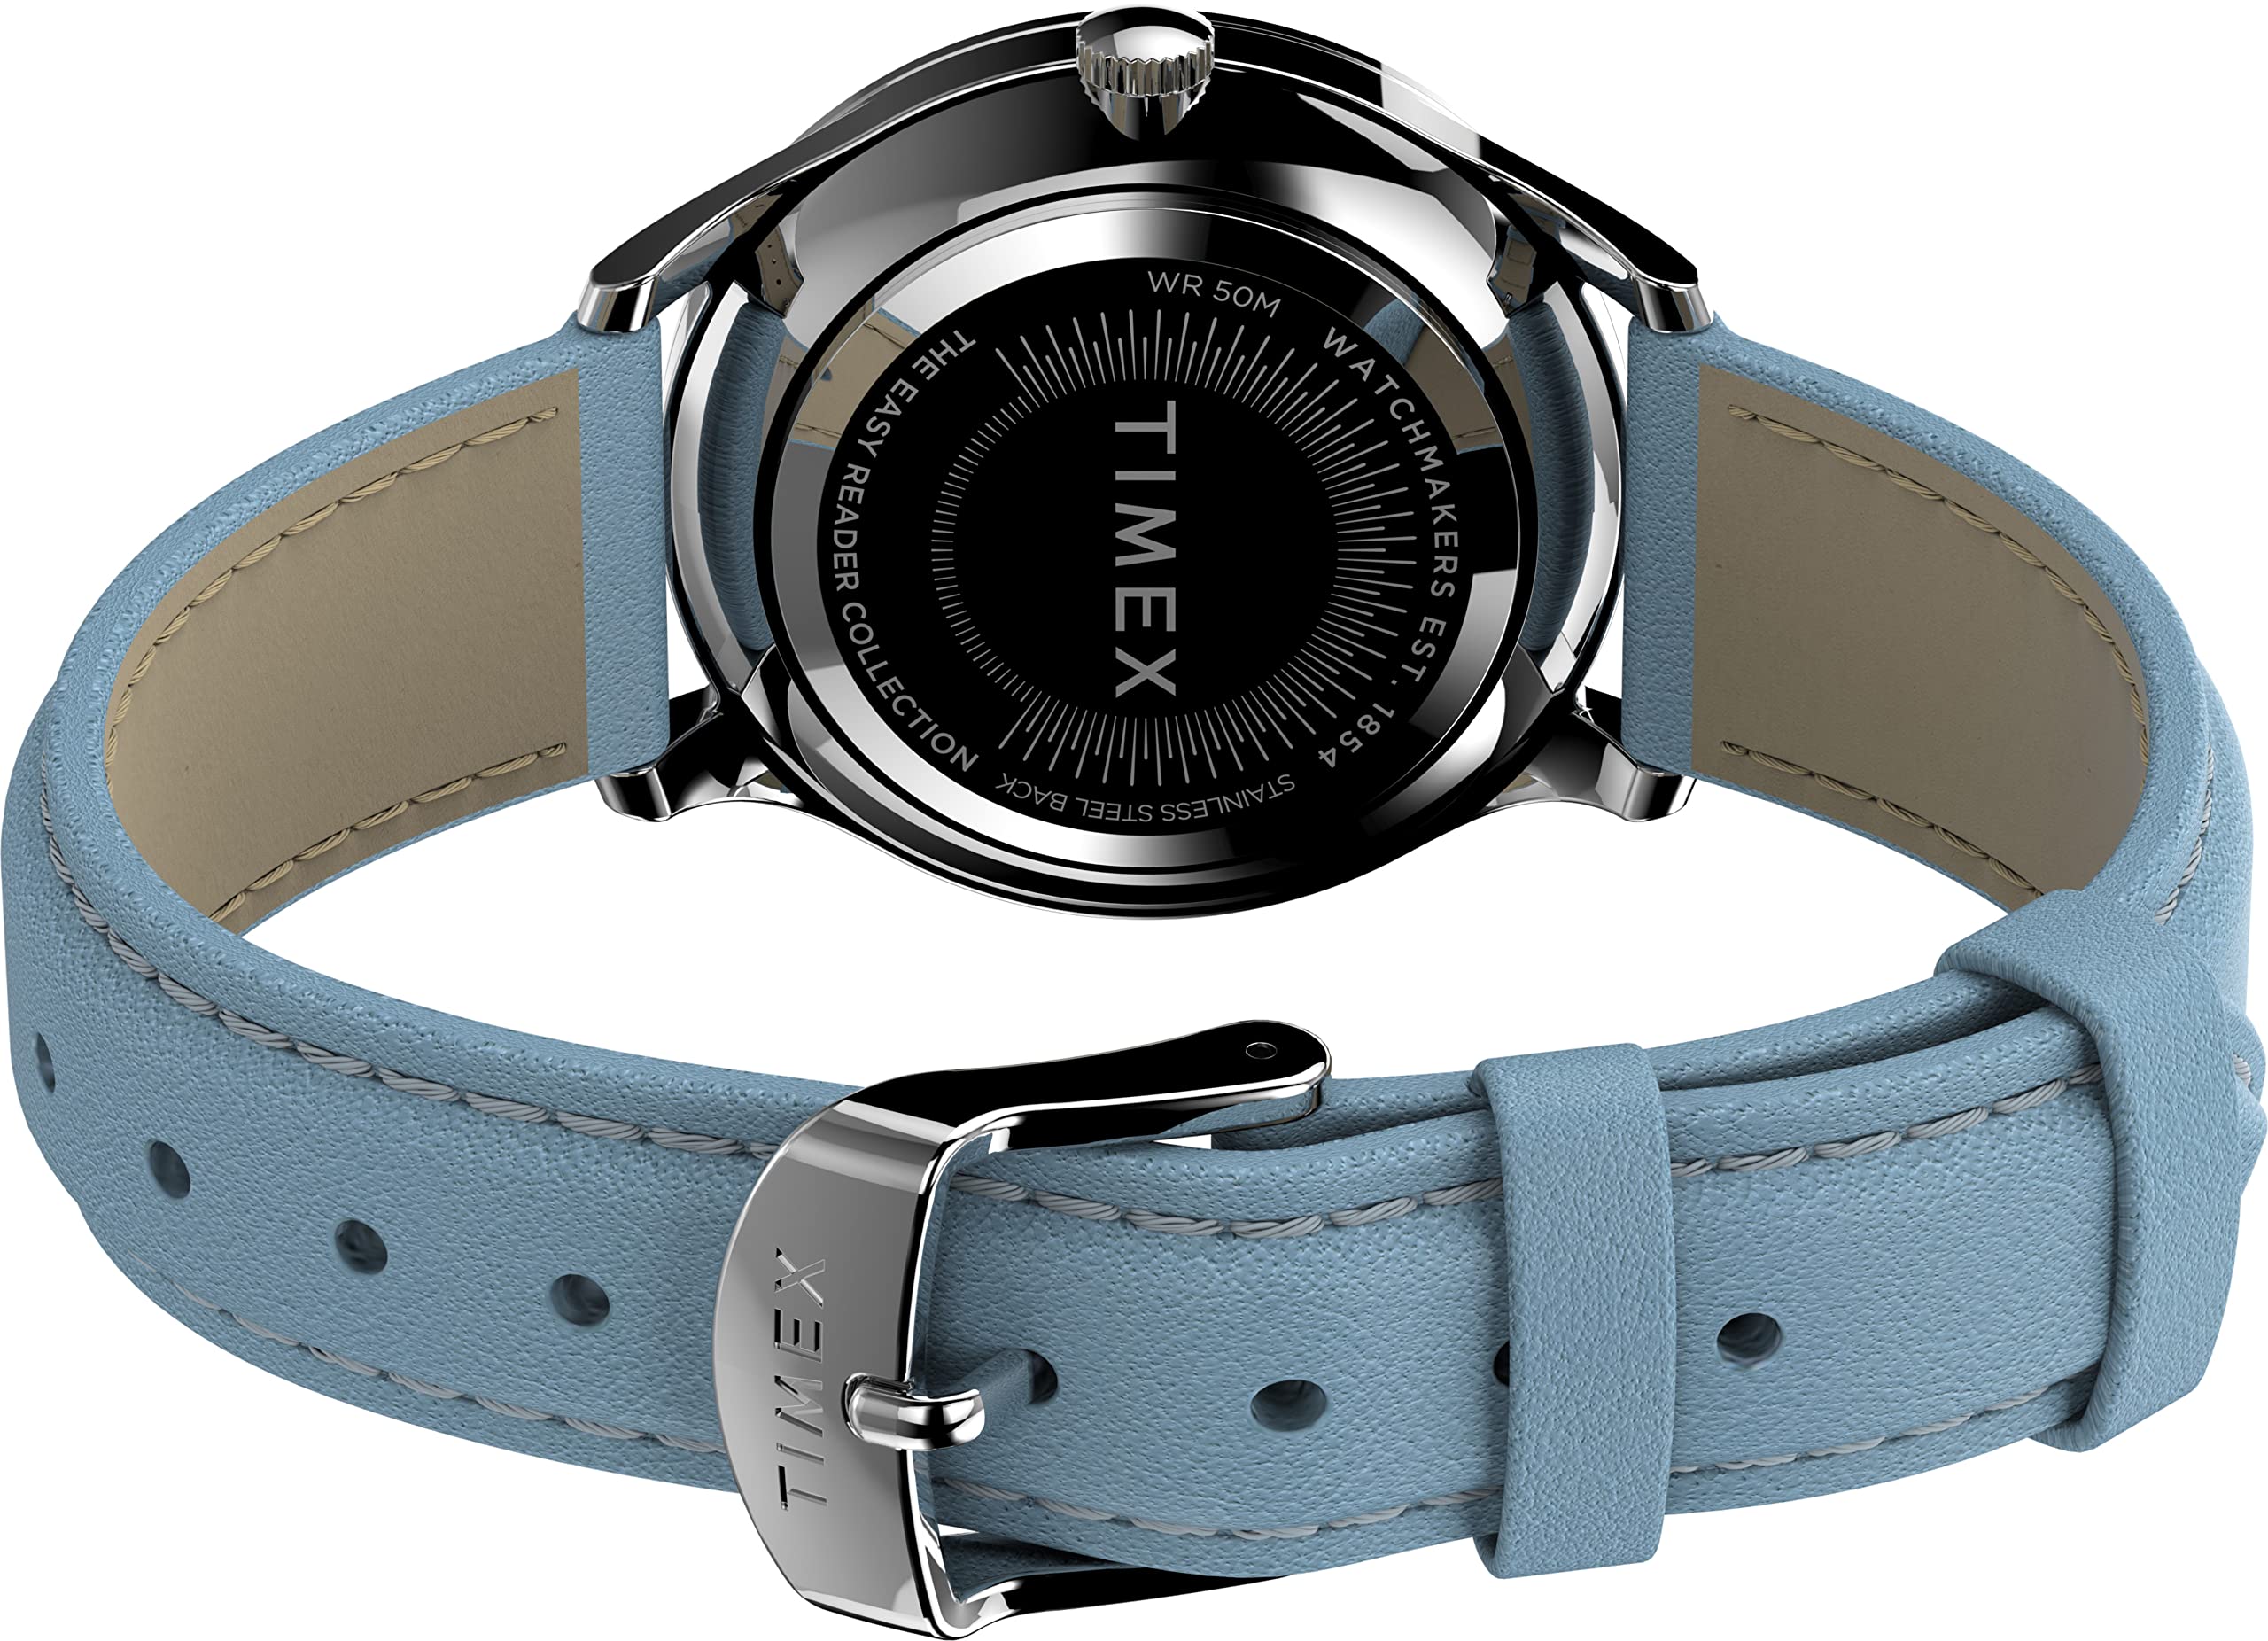 Timex Women's Modern Easy Reader 32mm Watch